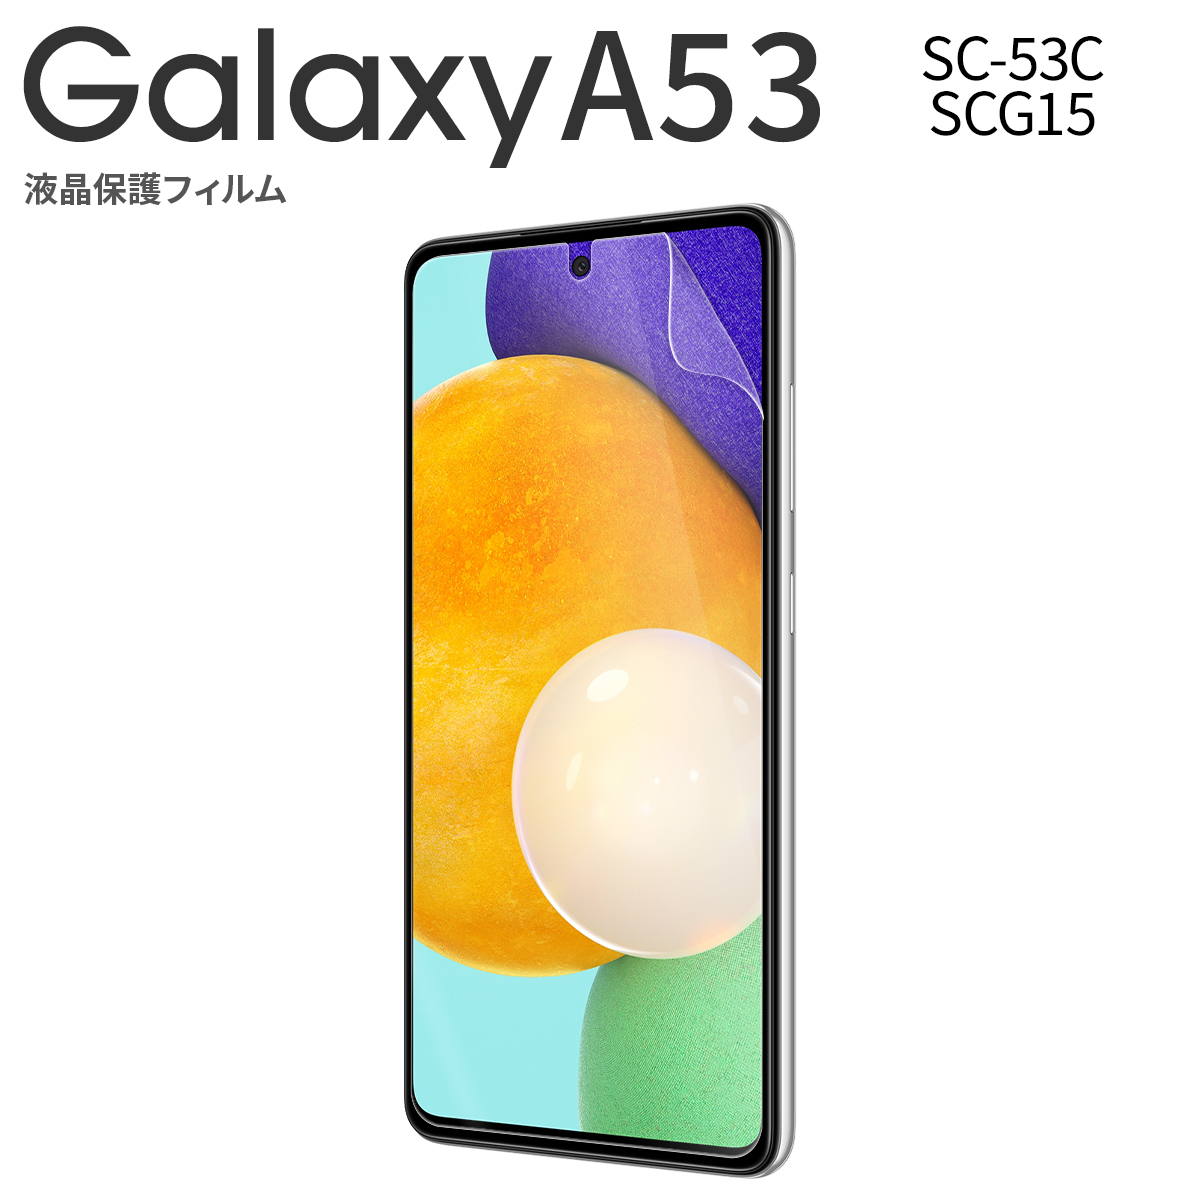 Galaxy A53 5G SC-53C SCG15 液晶保護フィルム